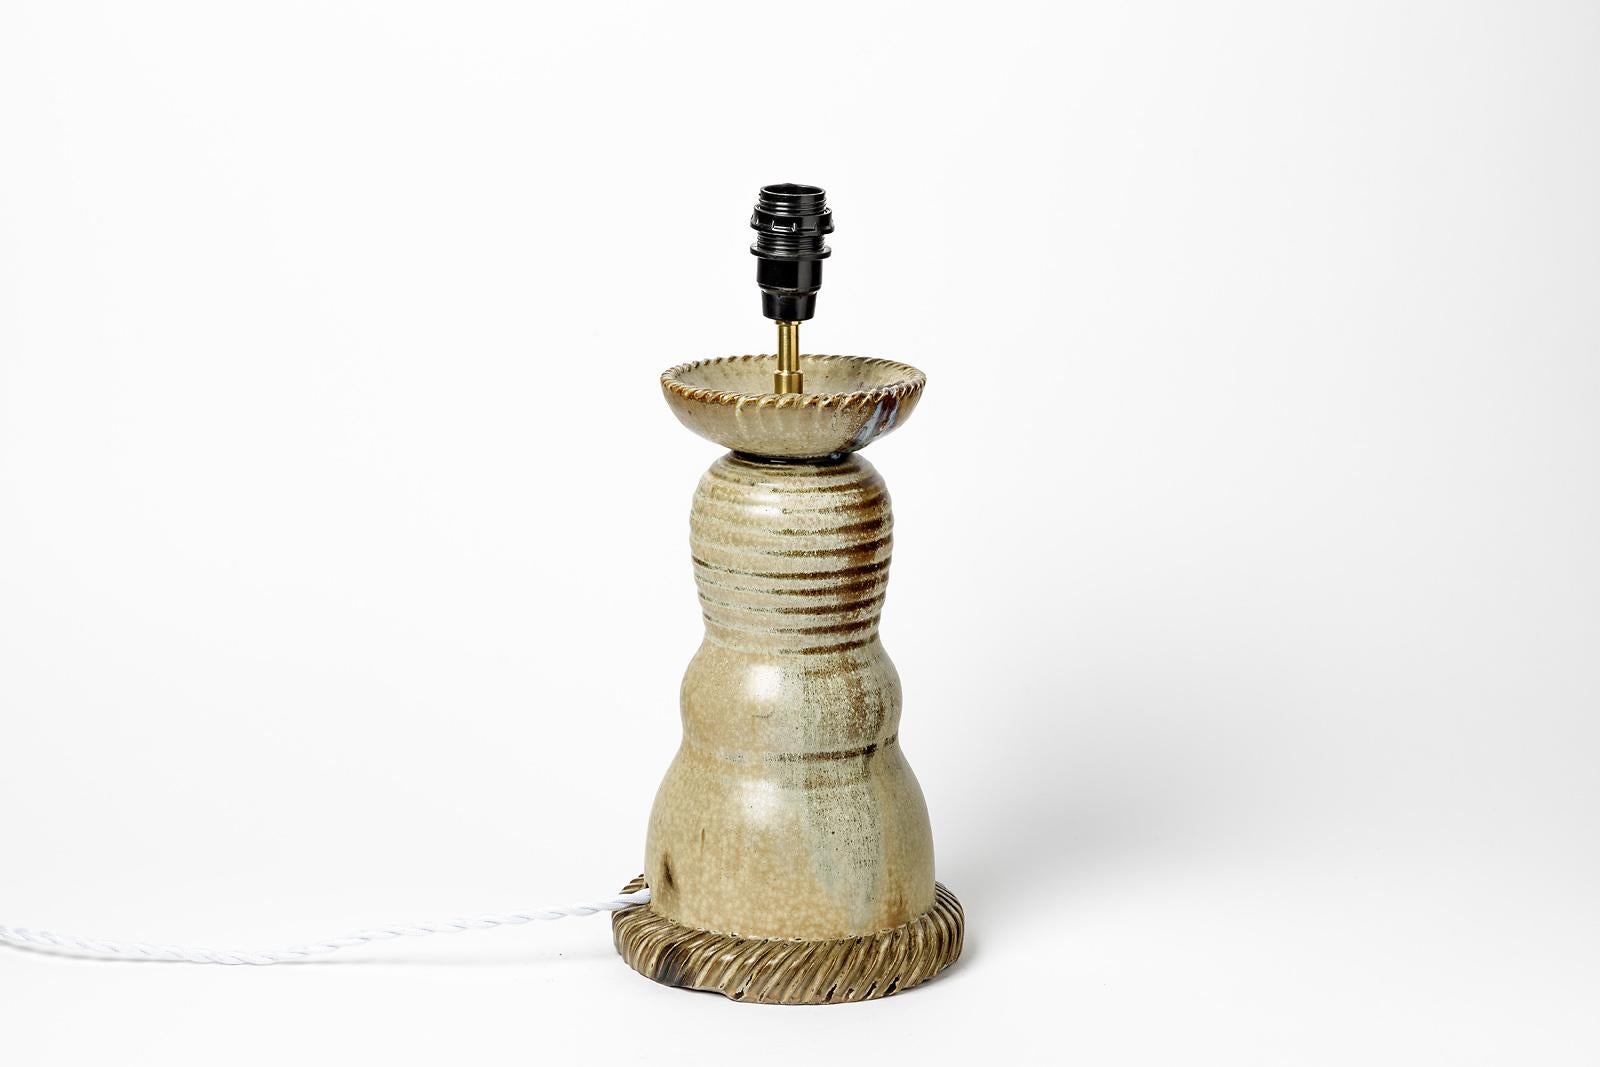 Jean Maubrou

Realisiert um 1950

Elegante Keramik-Tischlampe aus Steingut 

Signiert unter dem Sockel

Original Steingut Keramik Glasuren Farben

Elektrische Anlage ist neu

Keramik Maße - Höhe : 25 cm Groß : 15 cm
Maße mit